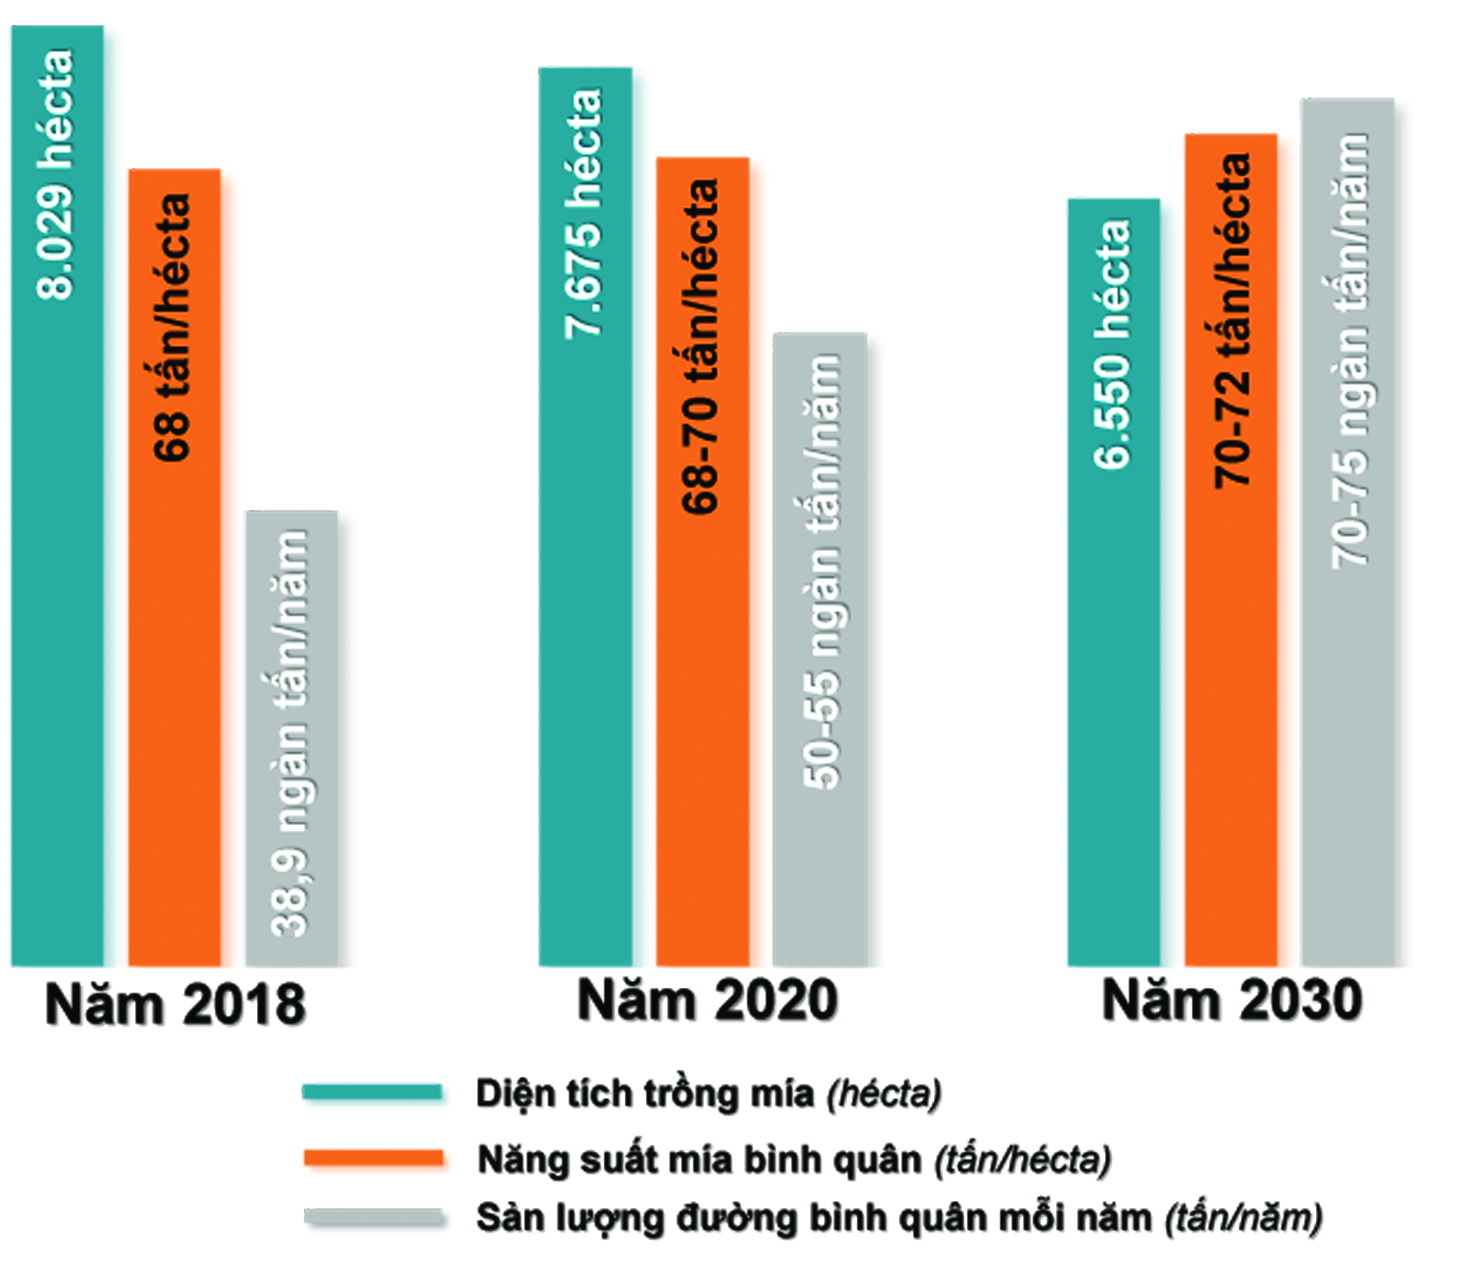 Biểu đồ thể hiện diện tích trồng mía đường, năng suất mía bình quân, sản lượng đường bình quân năm 2018; quy hoạch đến năm 2020 và năm 2030. (Thông tin: Bình Nguyên - Đồ họa: Hải Quân)